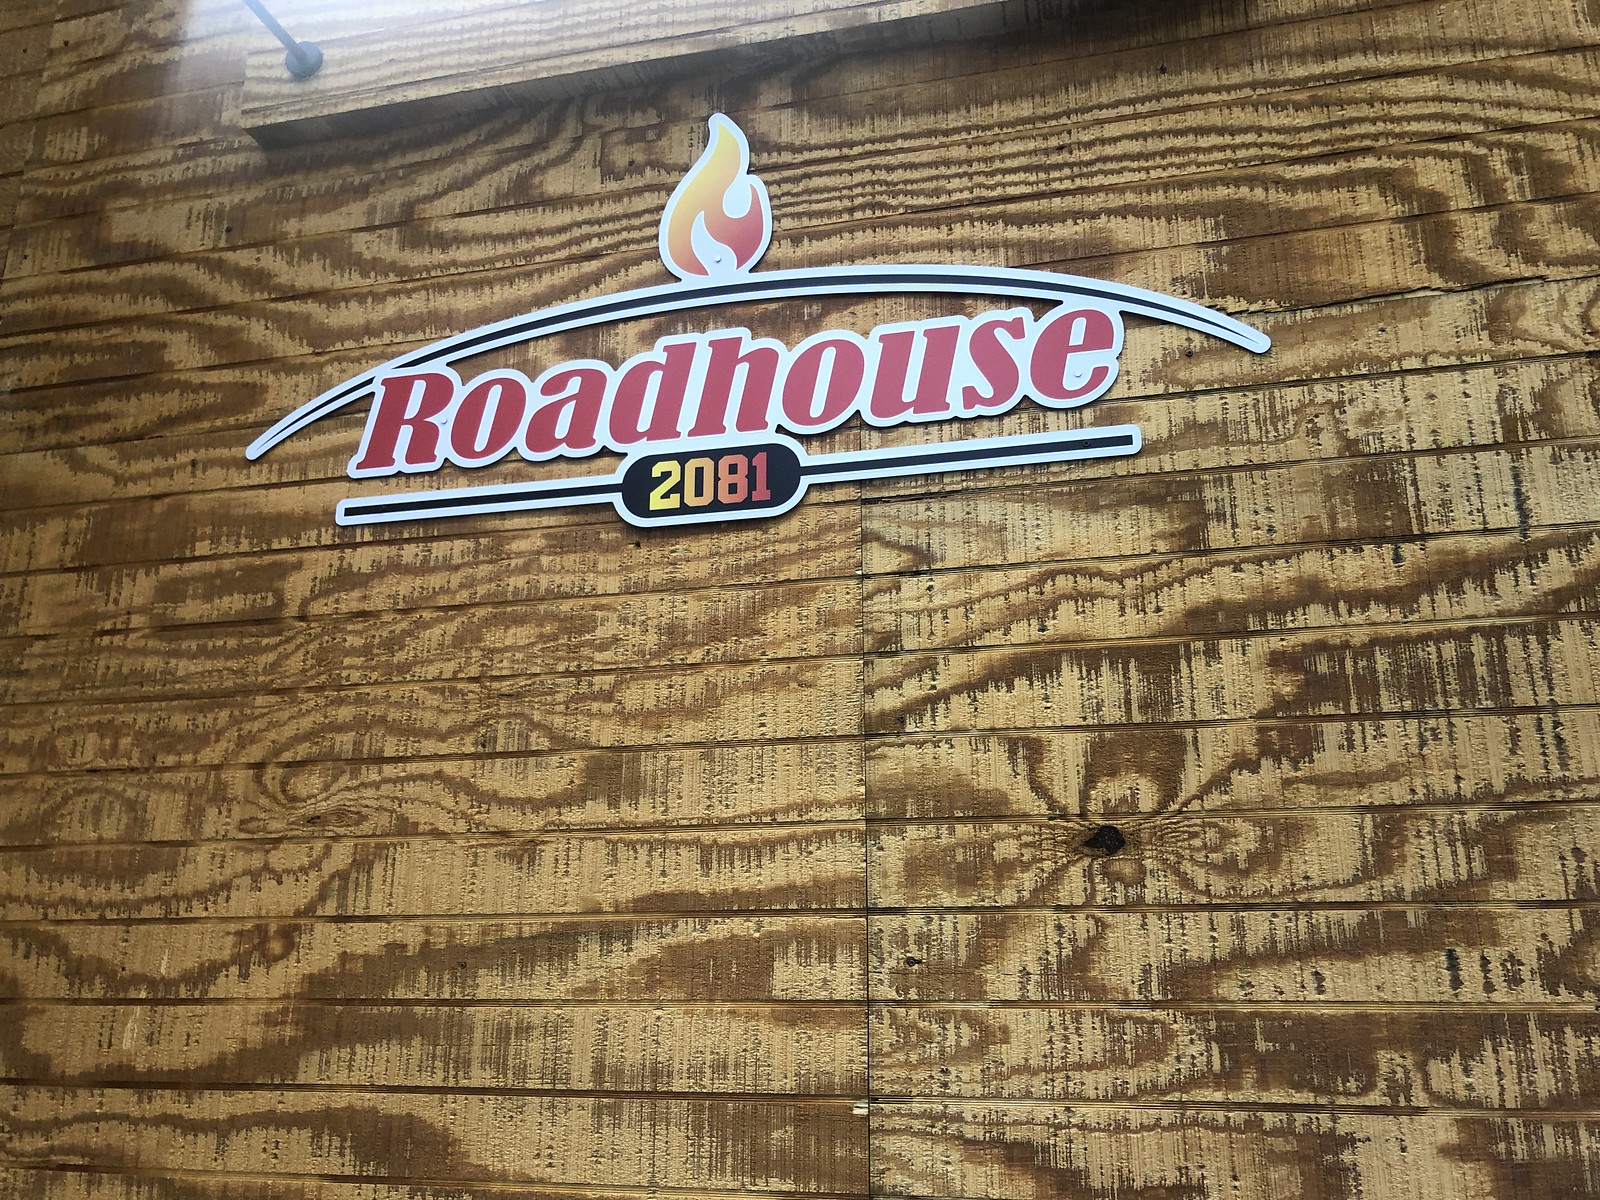 Roadhouse 2081